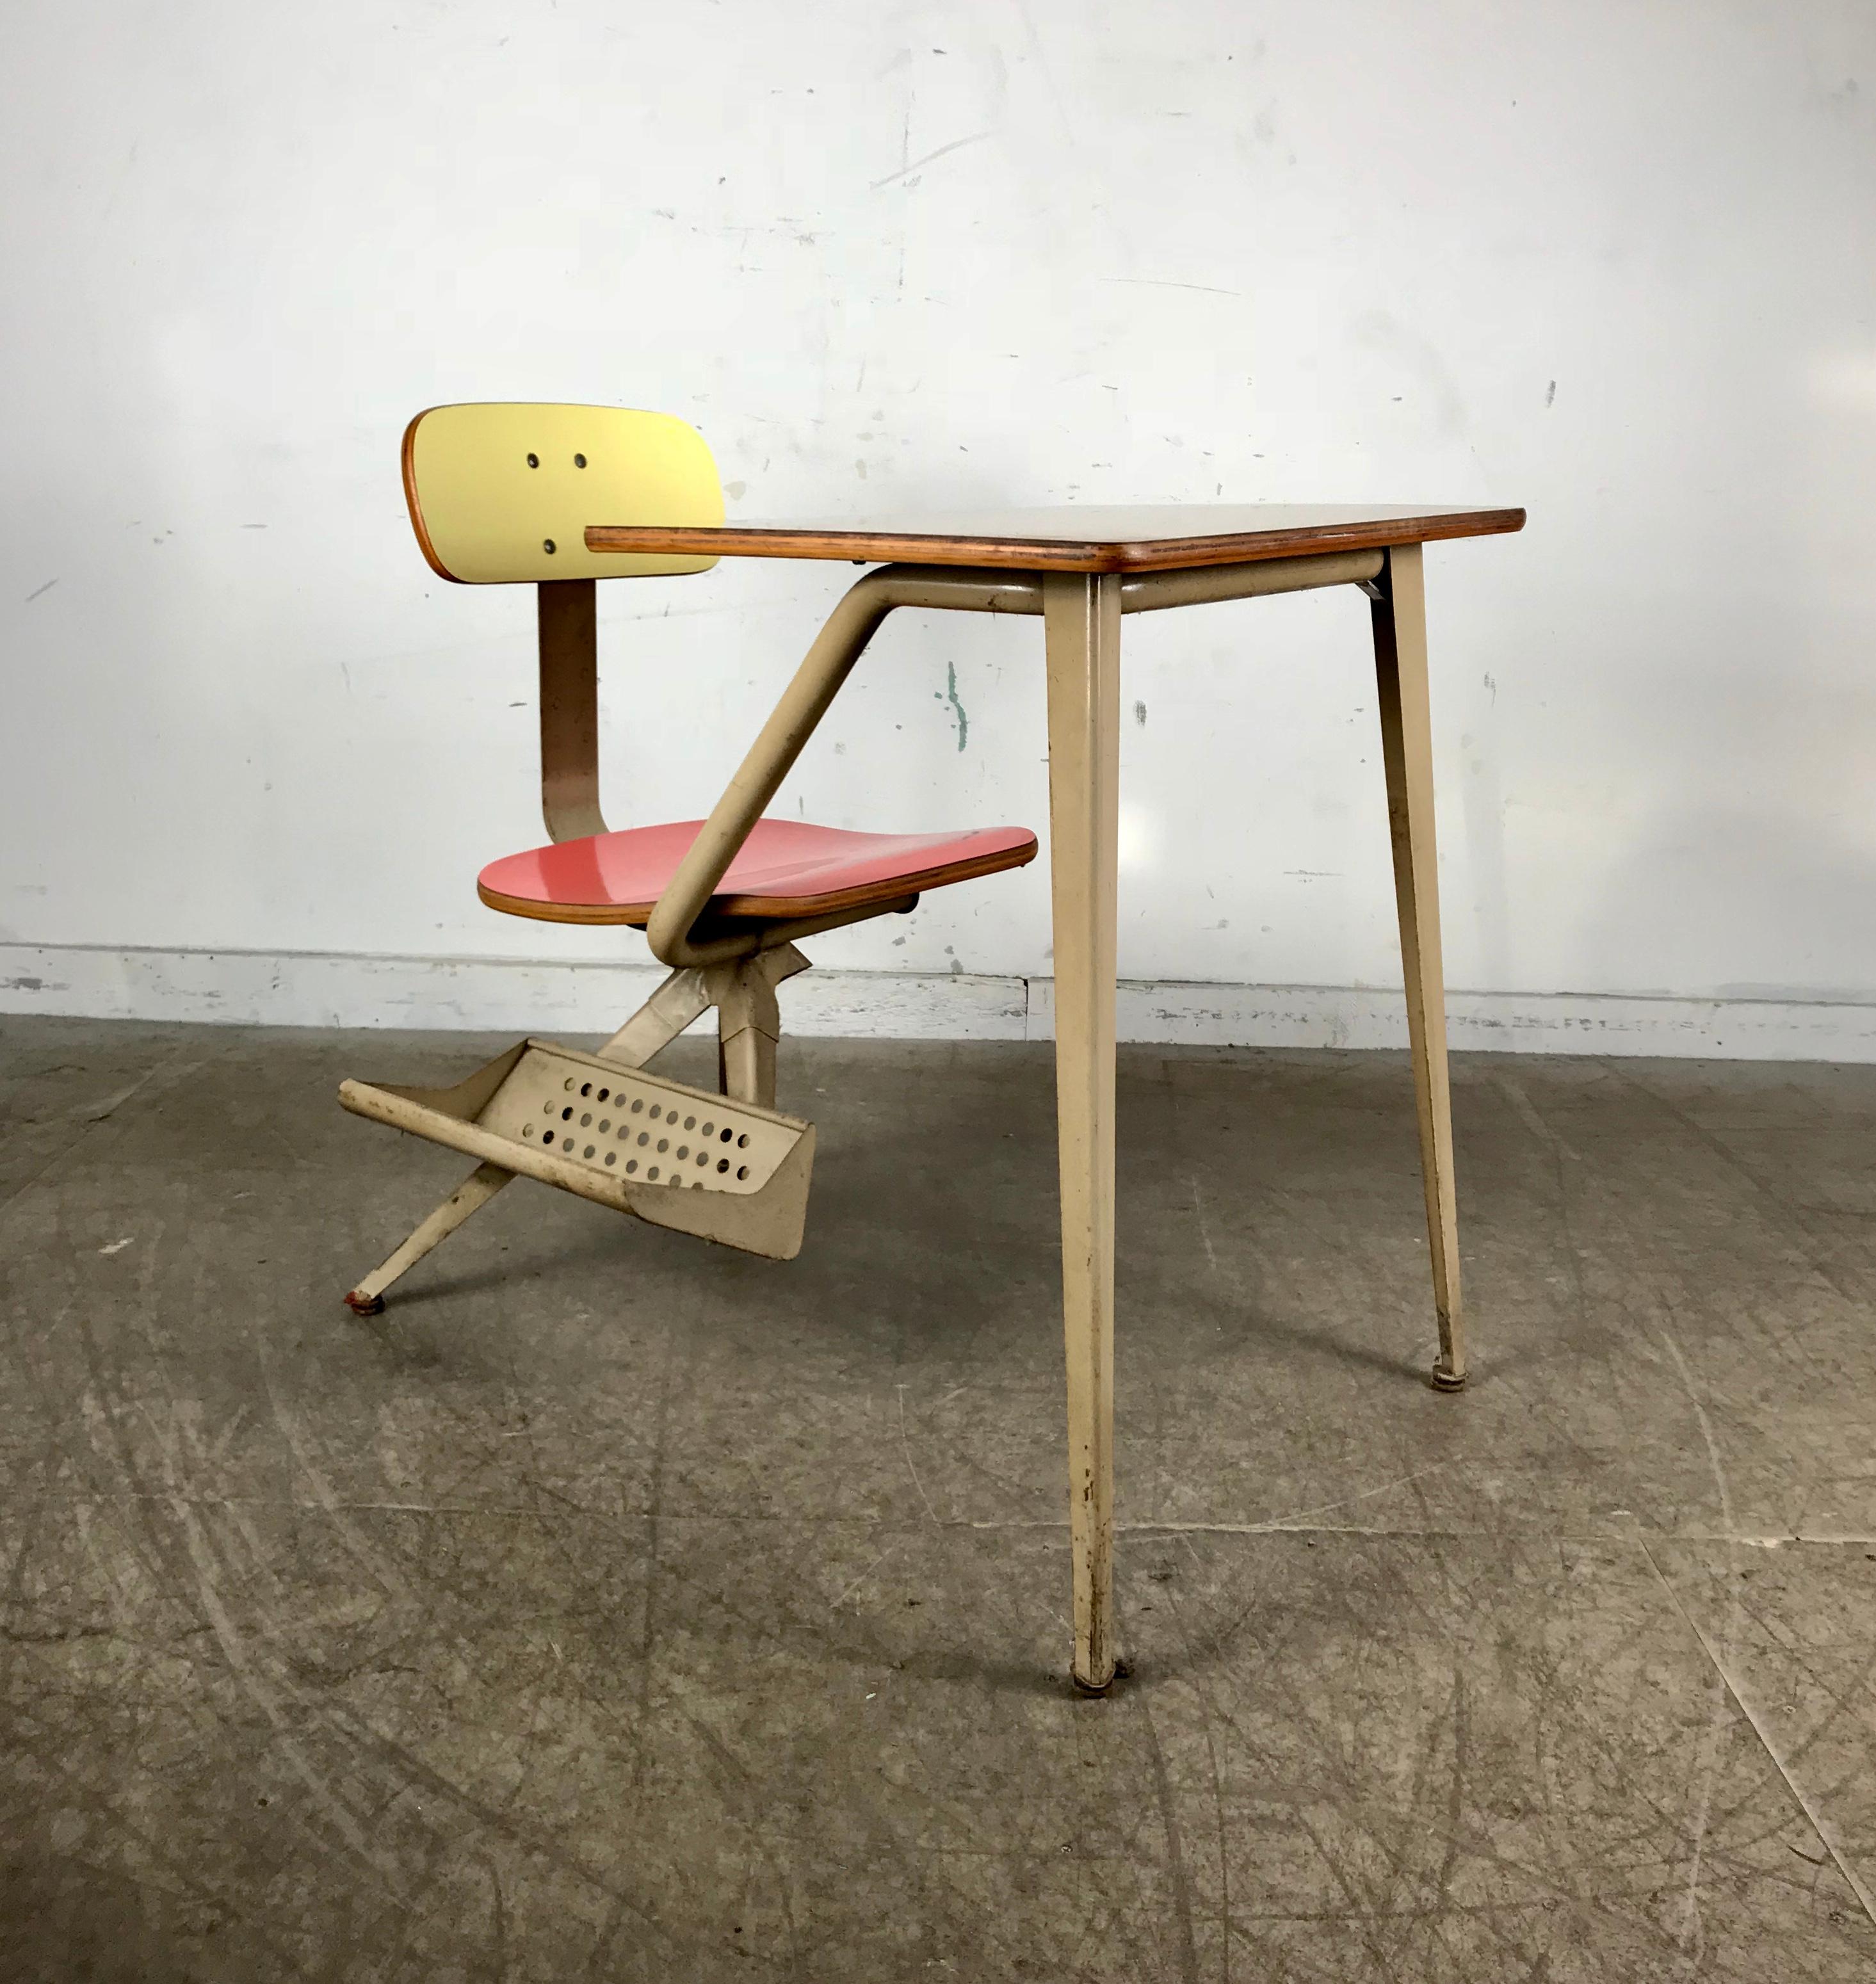 Insolite bureau d'enfant moderniste attribué à Friso Kramer, design étonnant rappelant les créations françaises de Jean Prouve, a conservé sa finition et sa patine d'origine.